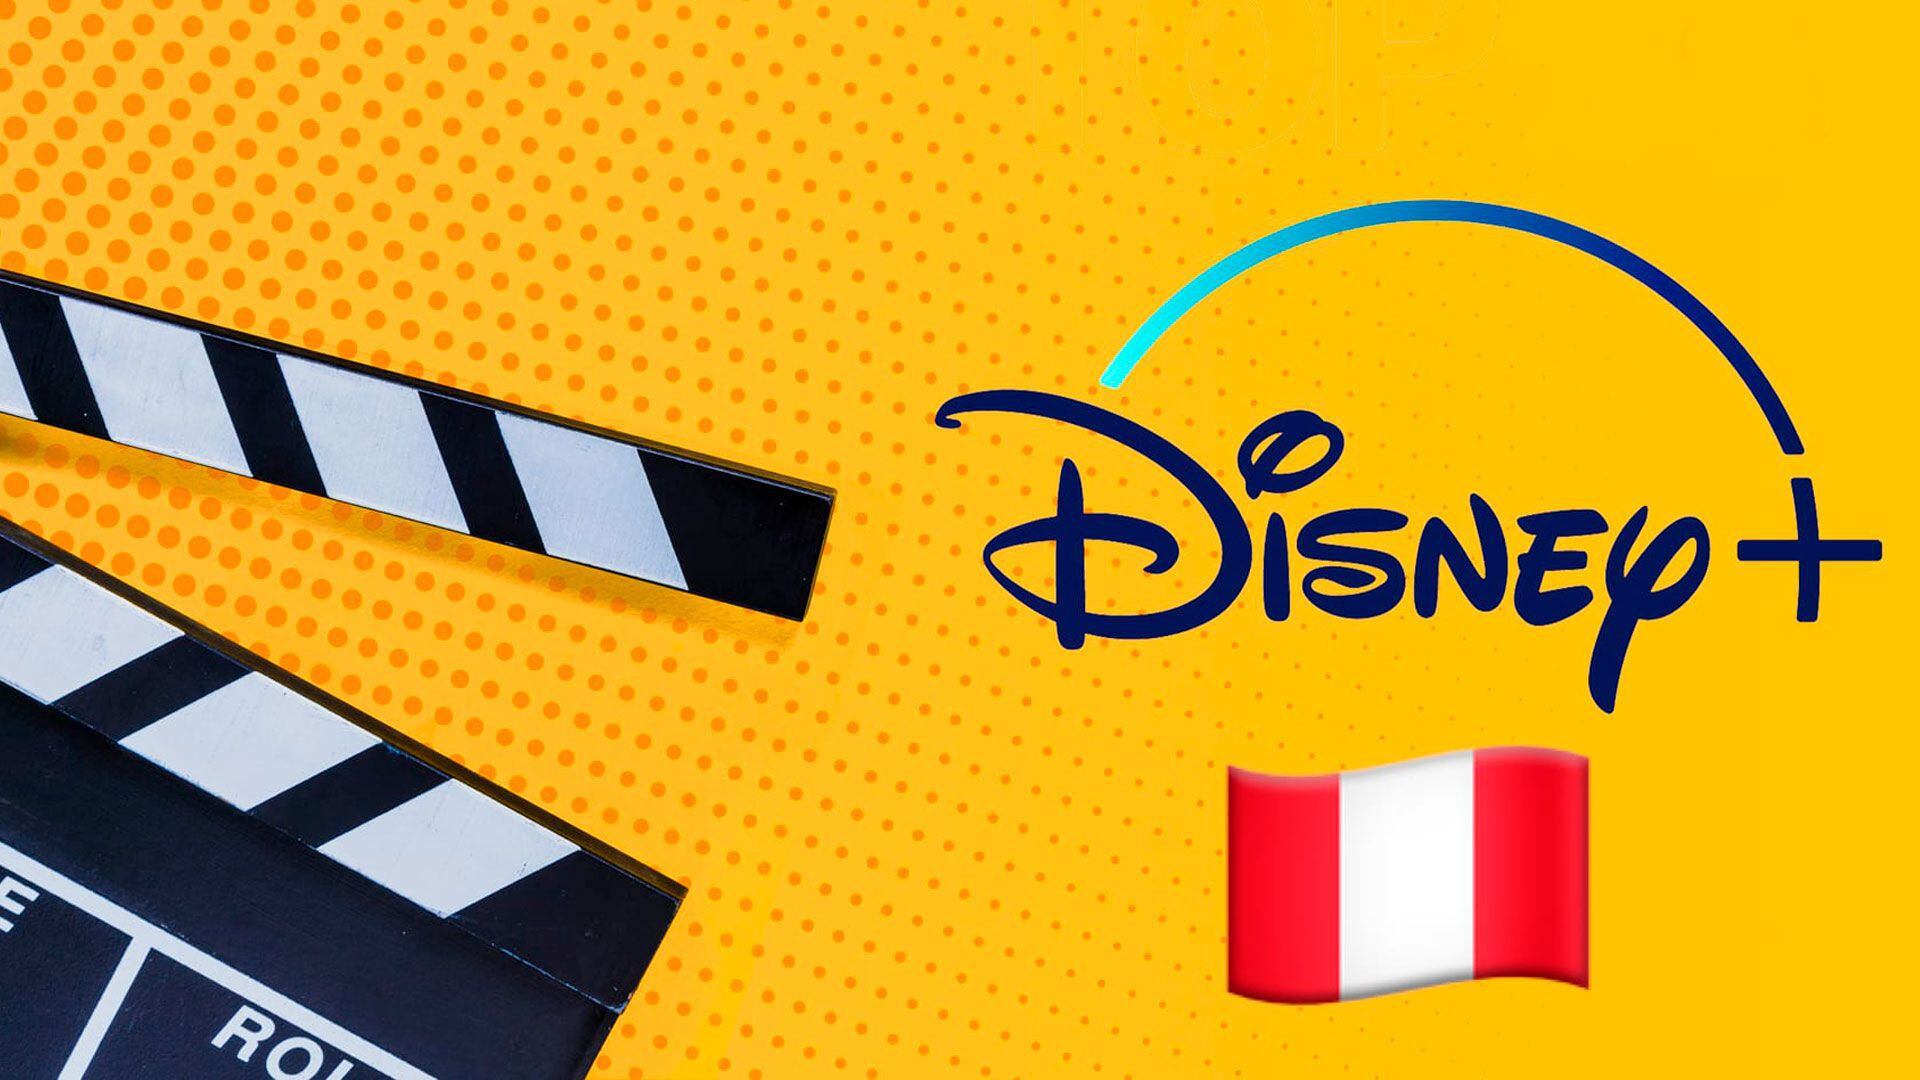 Disney Plus busca convertirse en la mejor opción para ver películas y series. (Infobae)